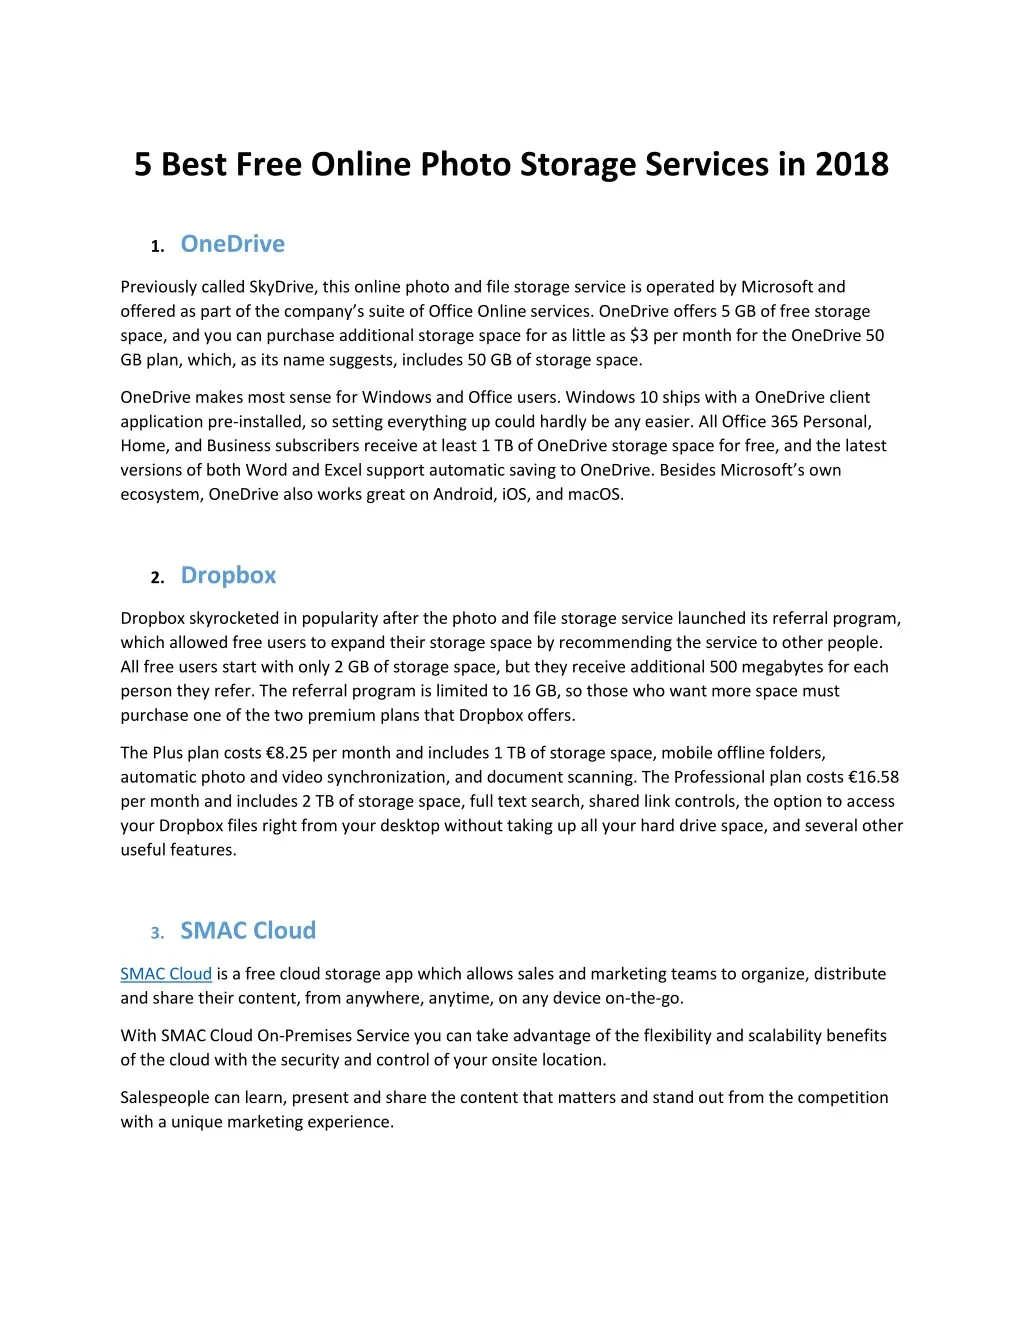 5 best free online photo storage services in 2018